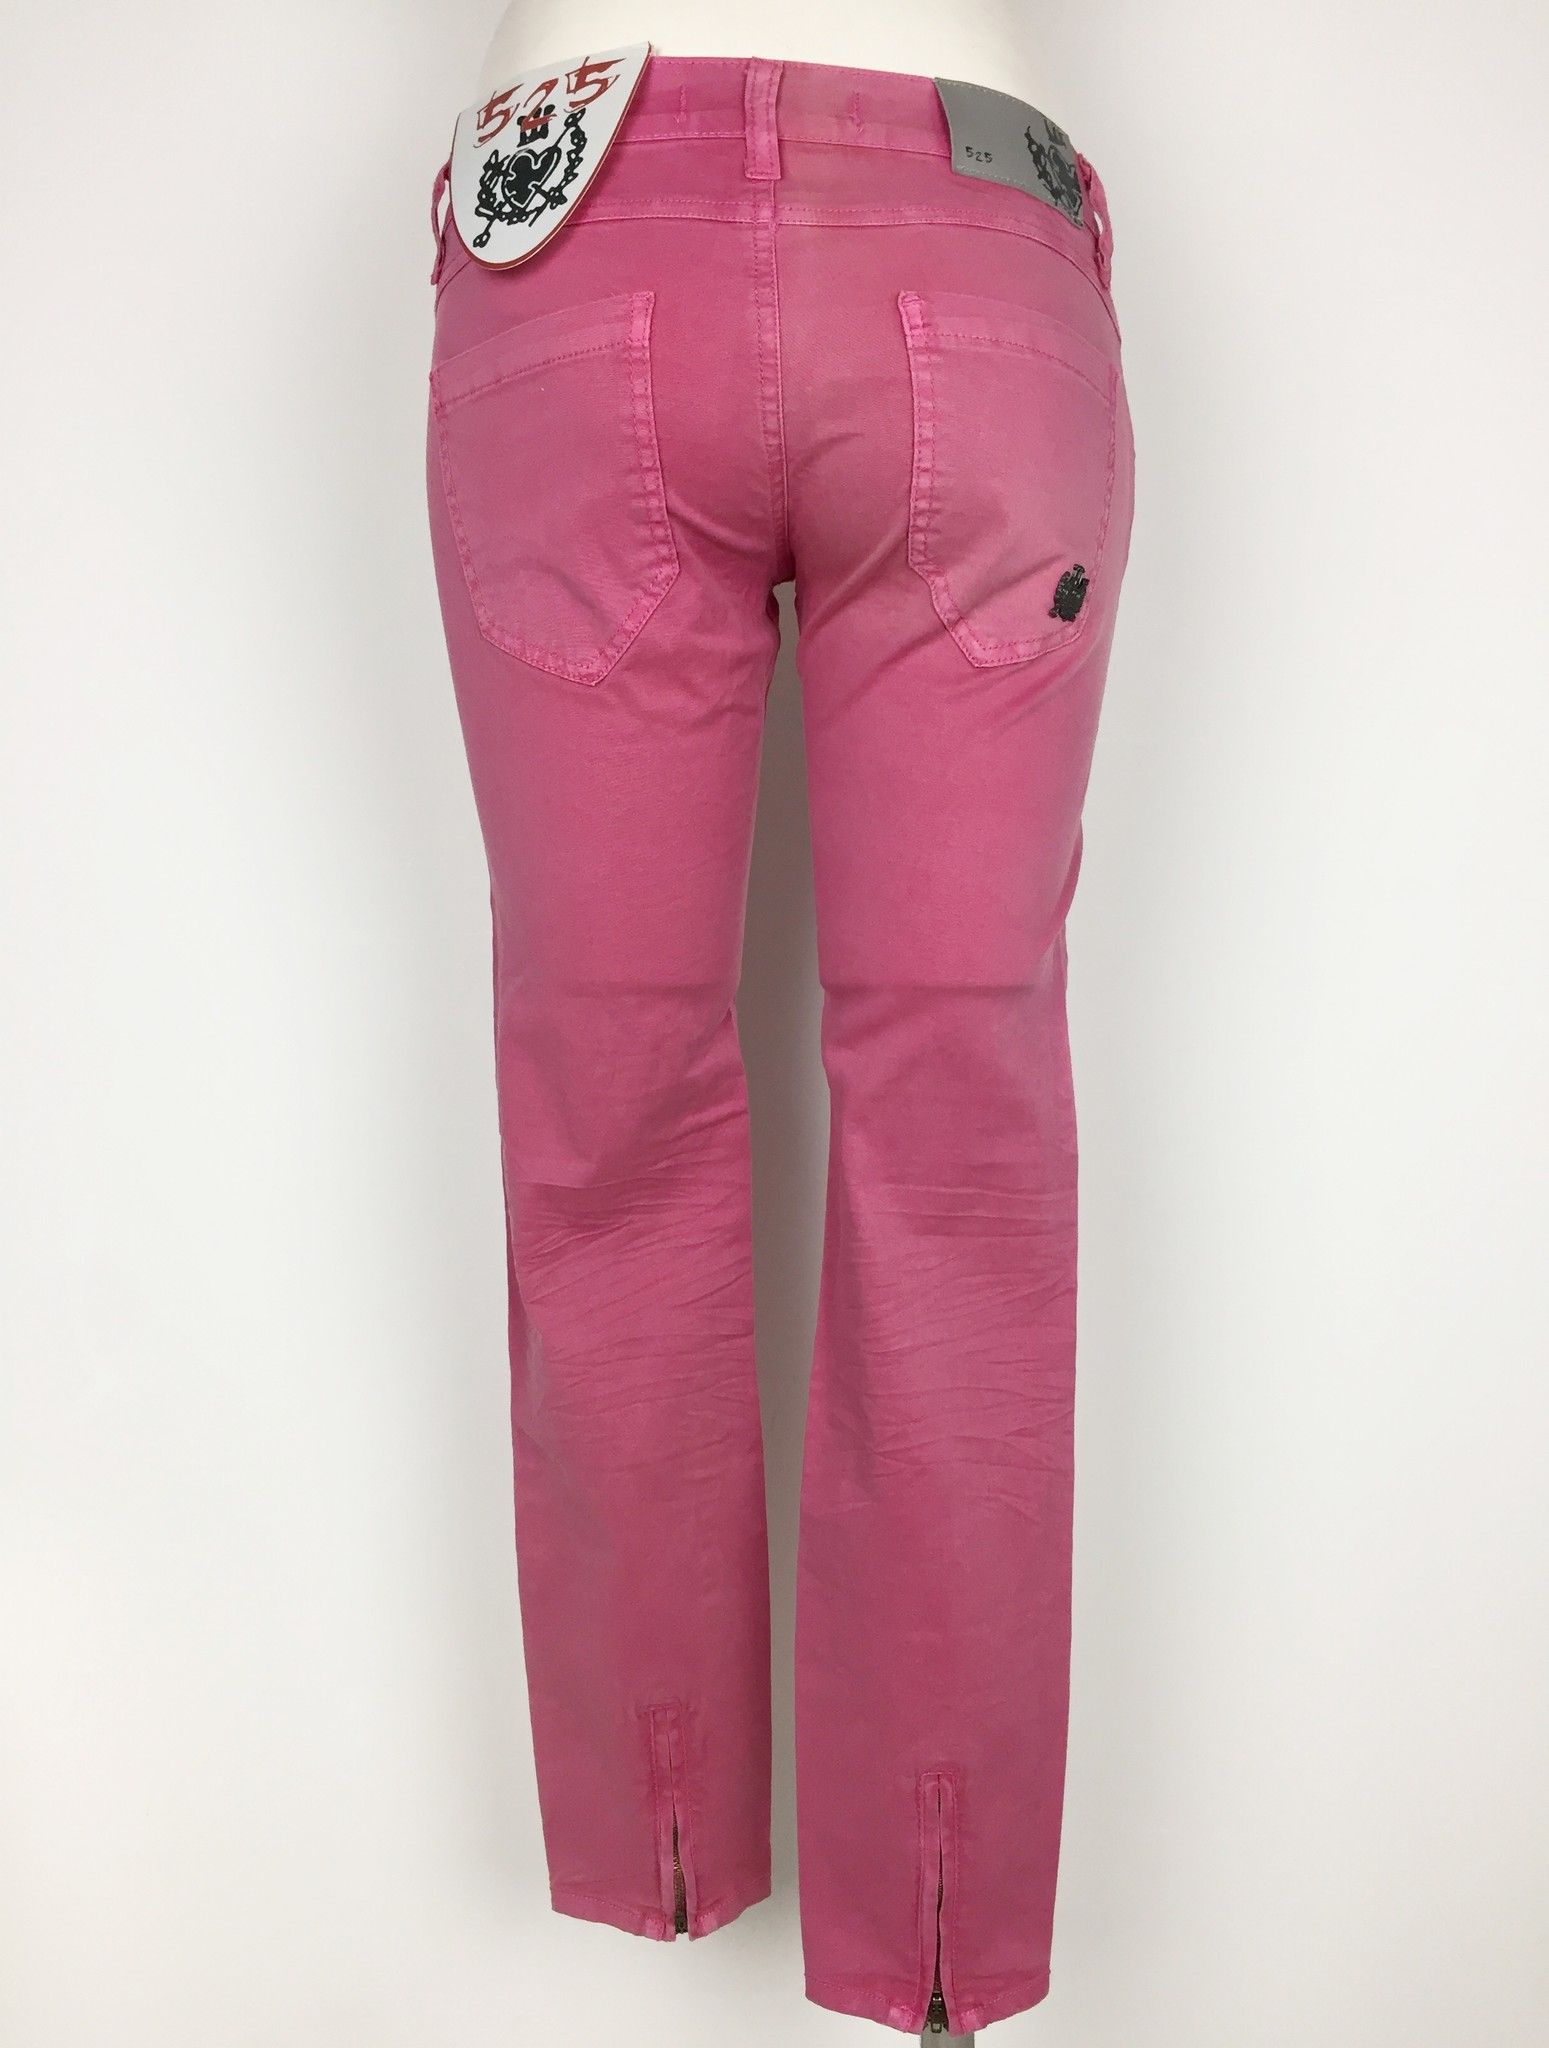 Pantalone Sexy Woman Modello Jeans in Cotone Leggero Cod.P454527